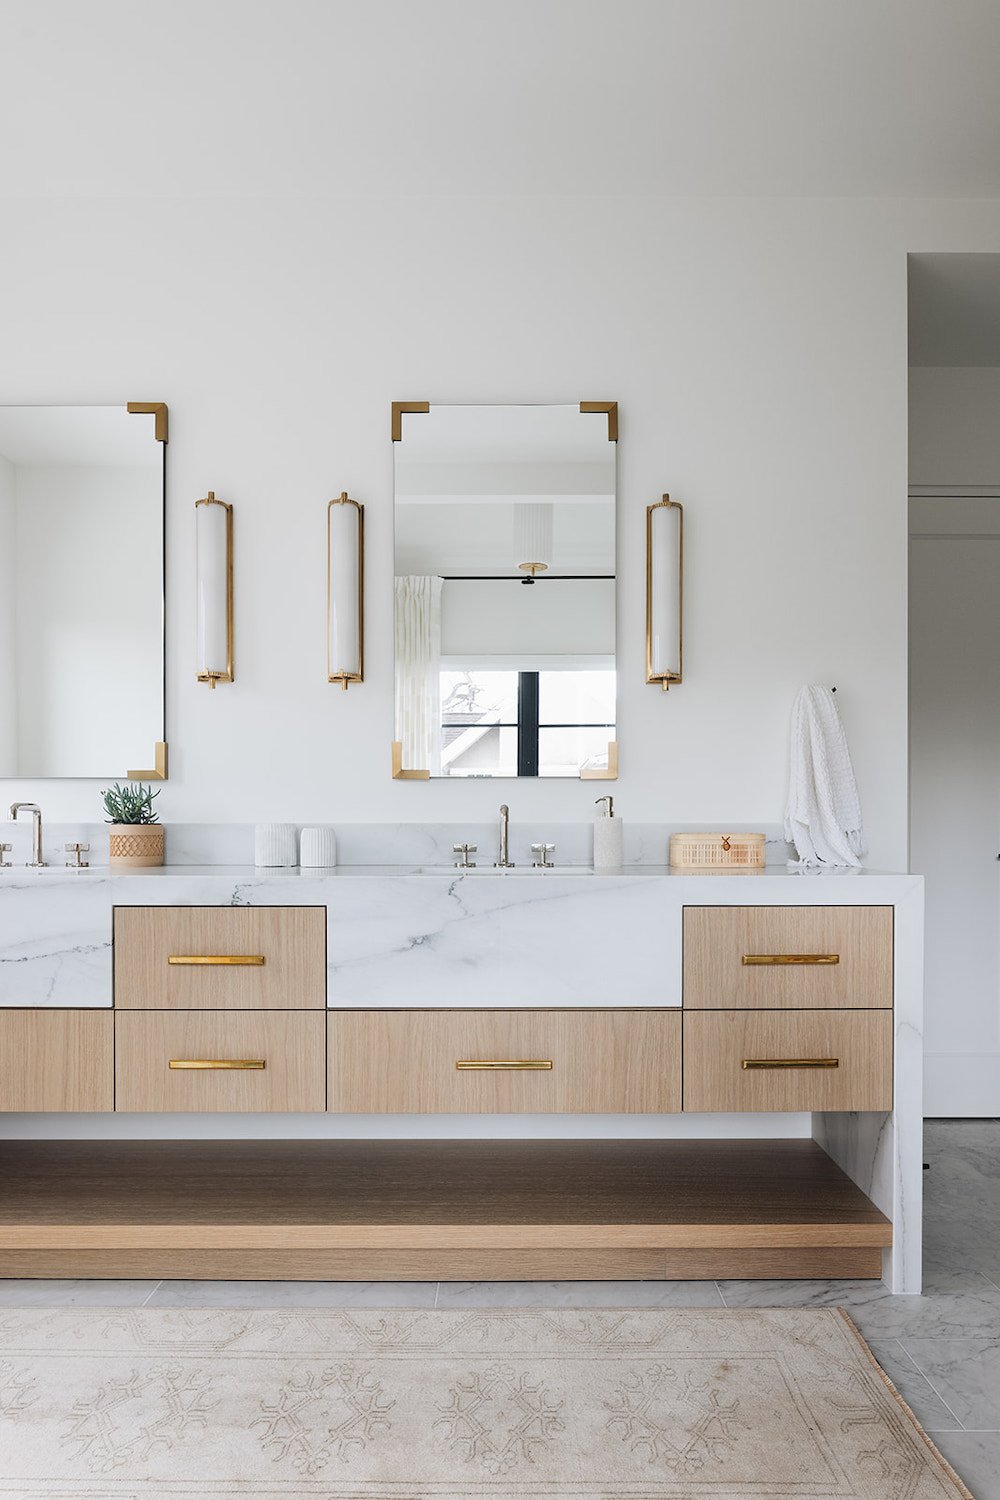 حمام مدرن سفید با سینک ظرفشویی، میز سنگ مرمر، و کشوهای چوبی روشن.